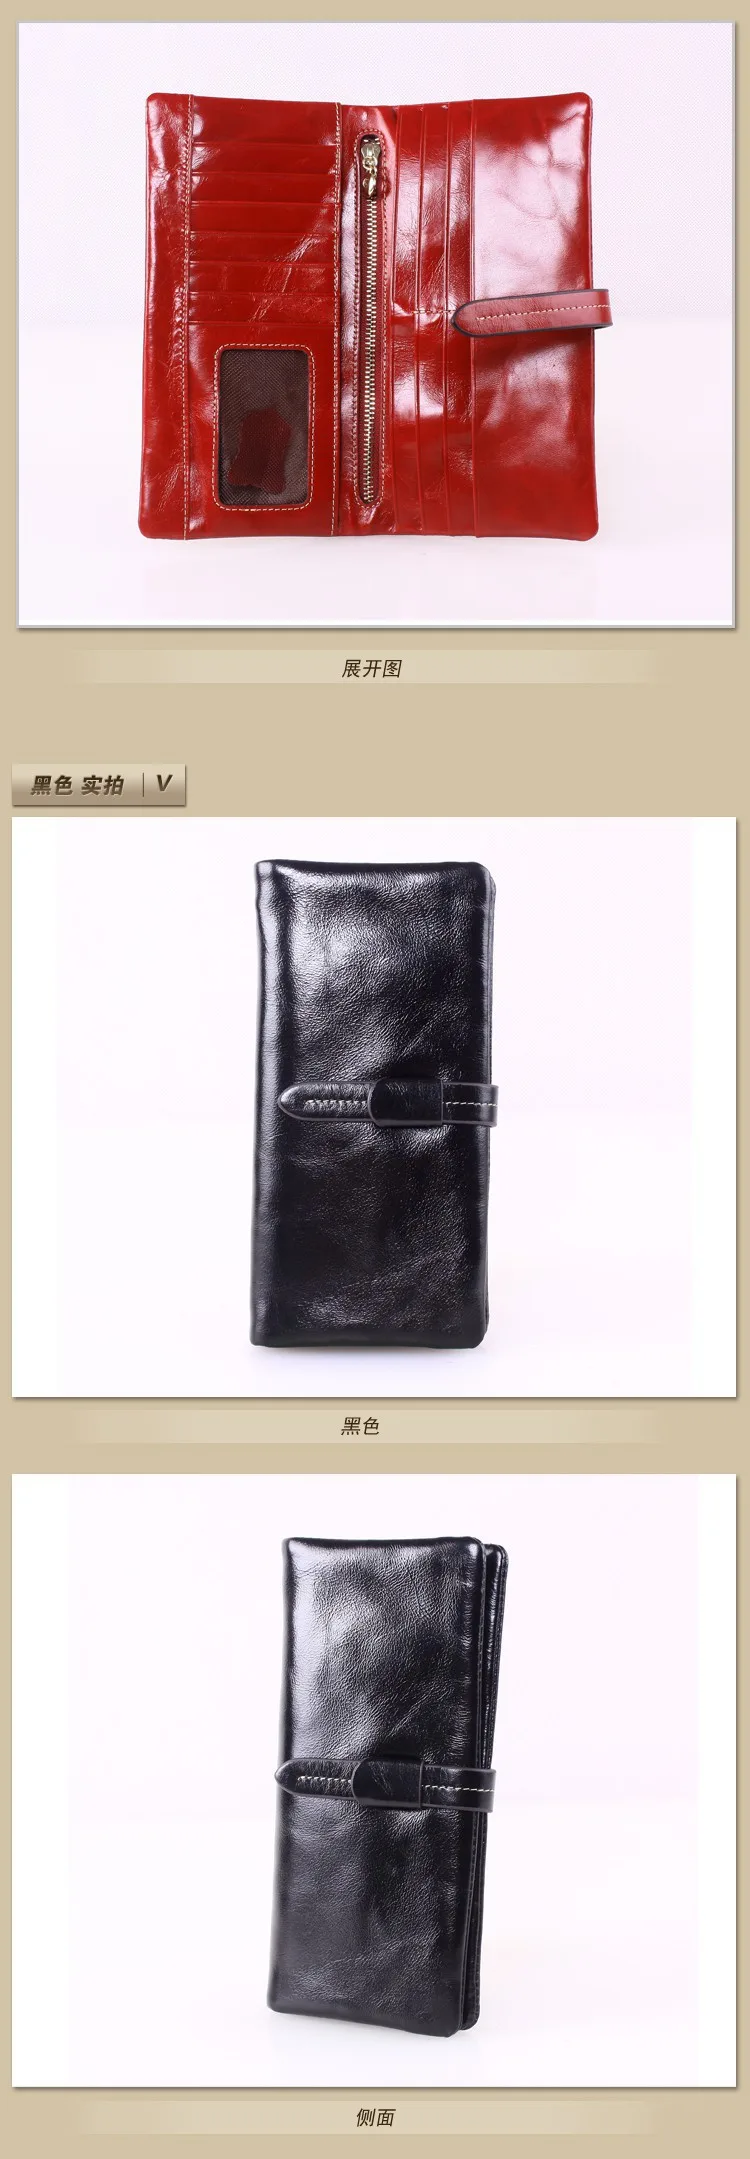 Стиль длинный женский бумажник из натуральной кожи, большой вместительный кошелек, маленькая сумка для мелочи